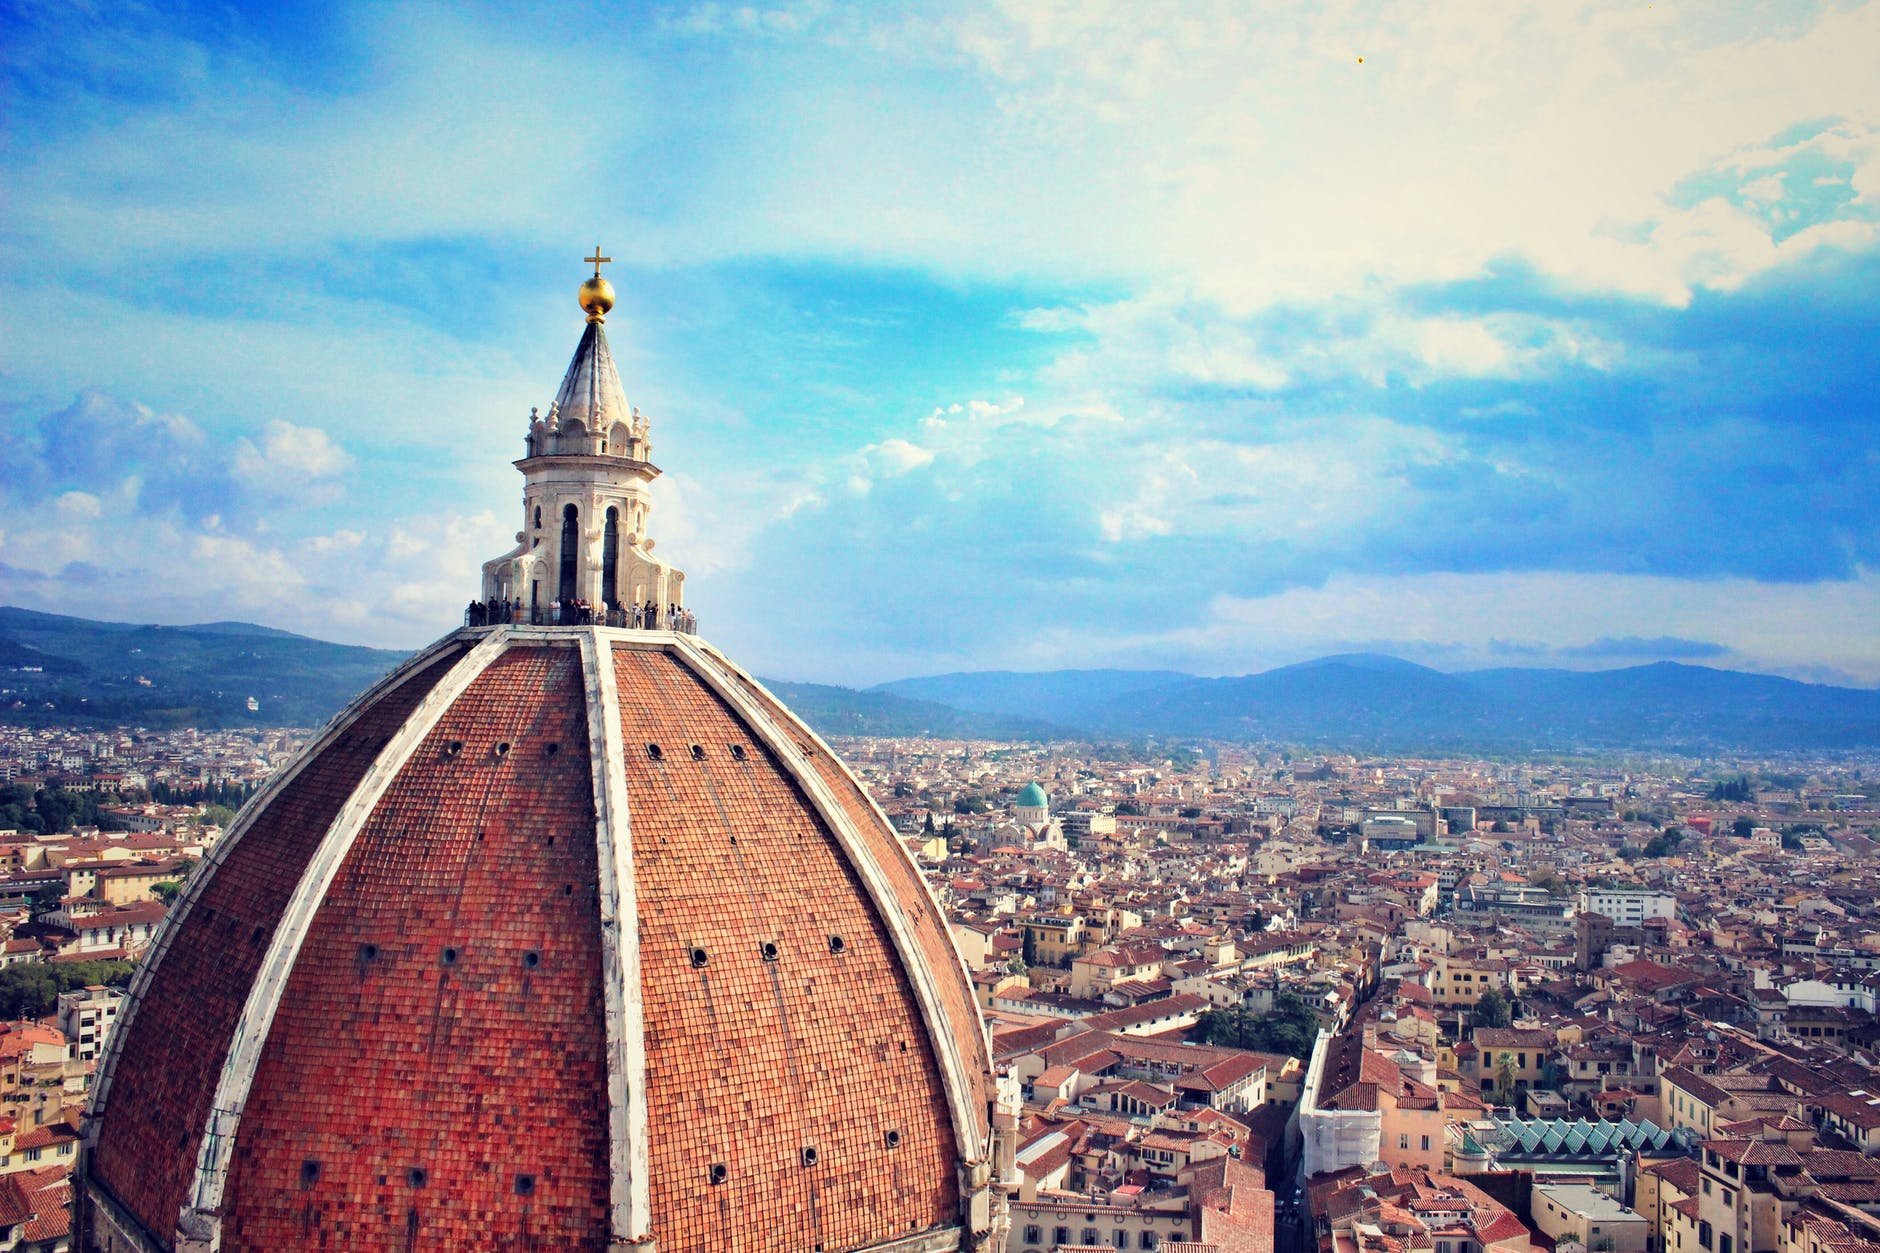 意大利留学的12个优点